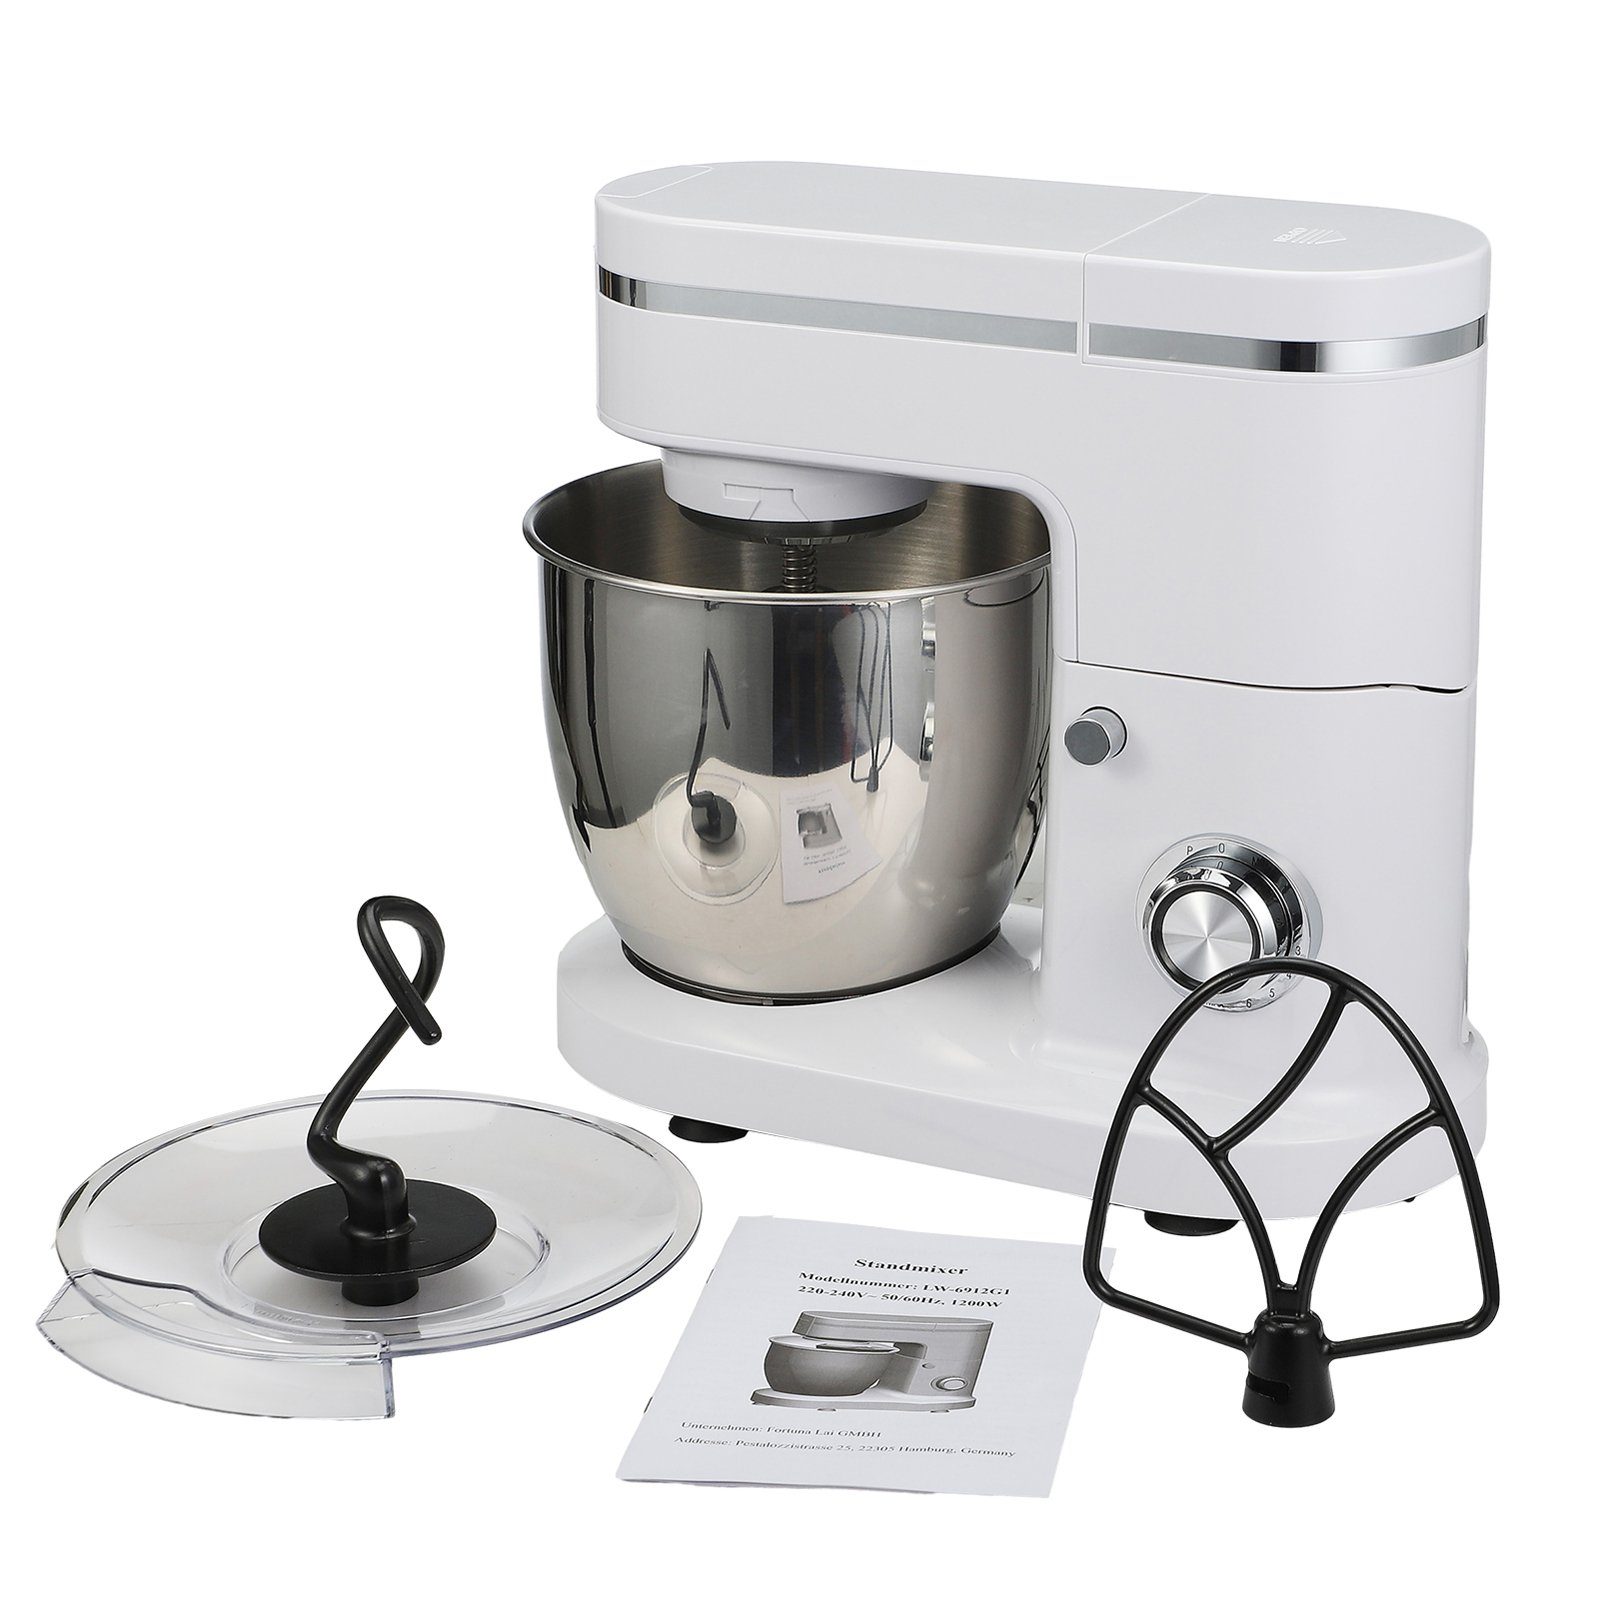 SEEZSSA Küchenmaschine mit Kochfunktion Kocher Grundausstattung LW6912G1 1200W, Mahlwerkaufsatz + Leistung Kunststoff Saftbecher 